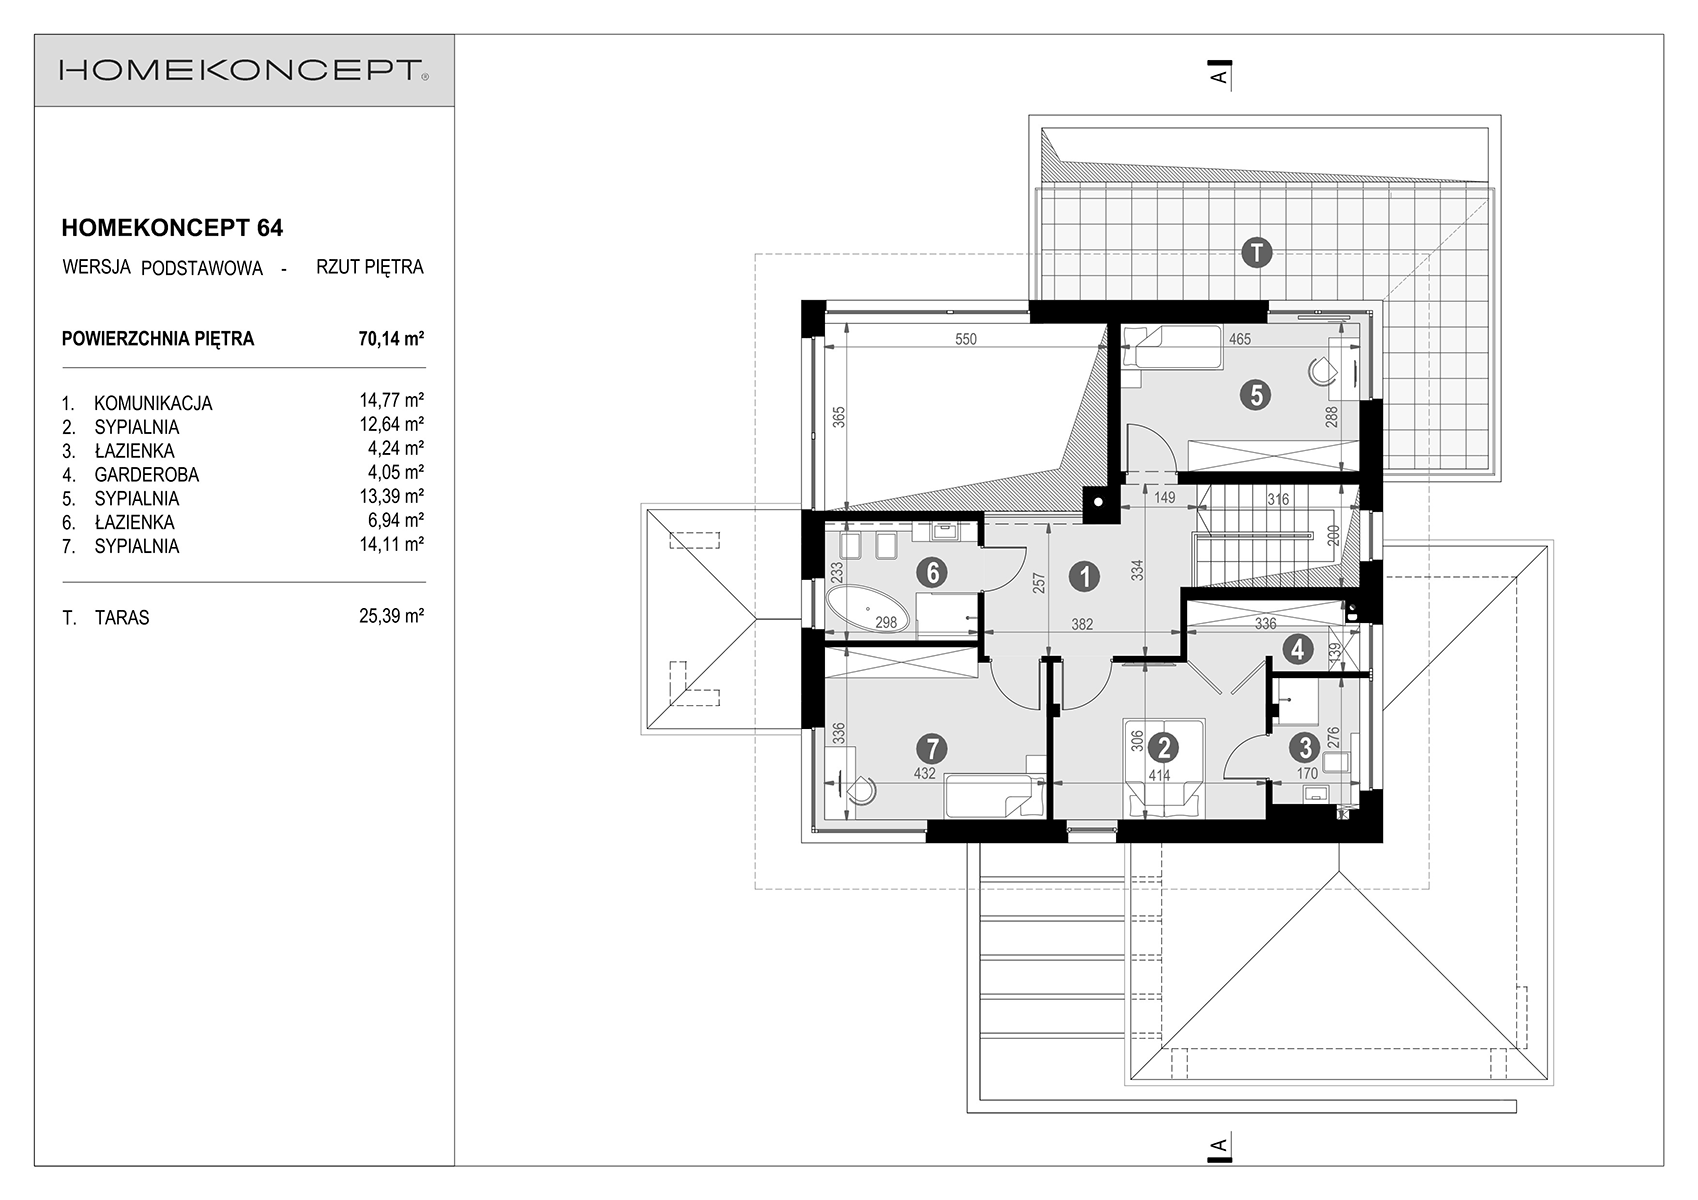 Rozkład łazienek na piętrze nowoczesnego domu rezydencyjnego HOMEKONCEPT 64